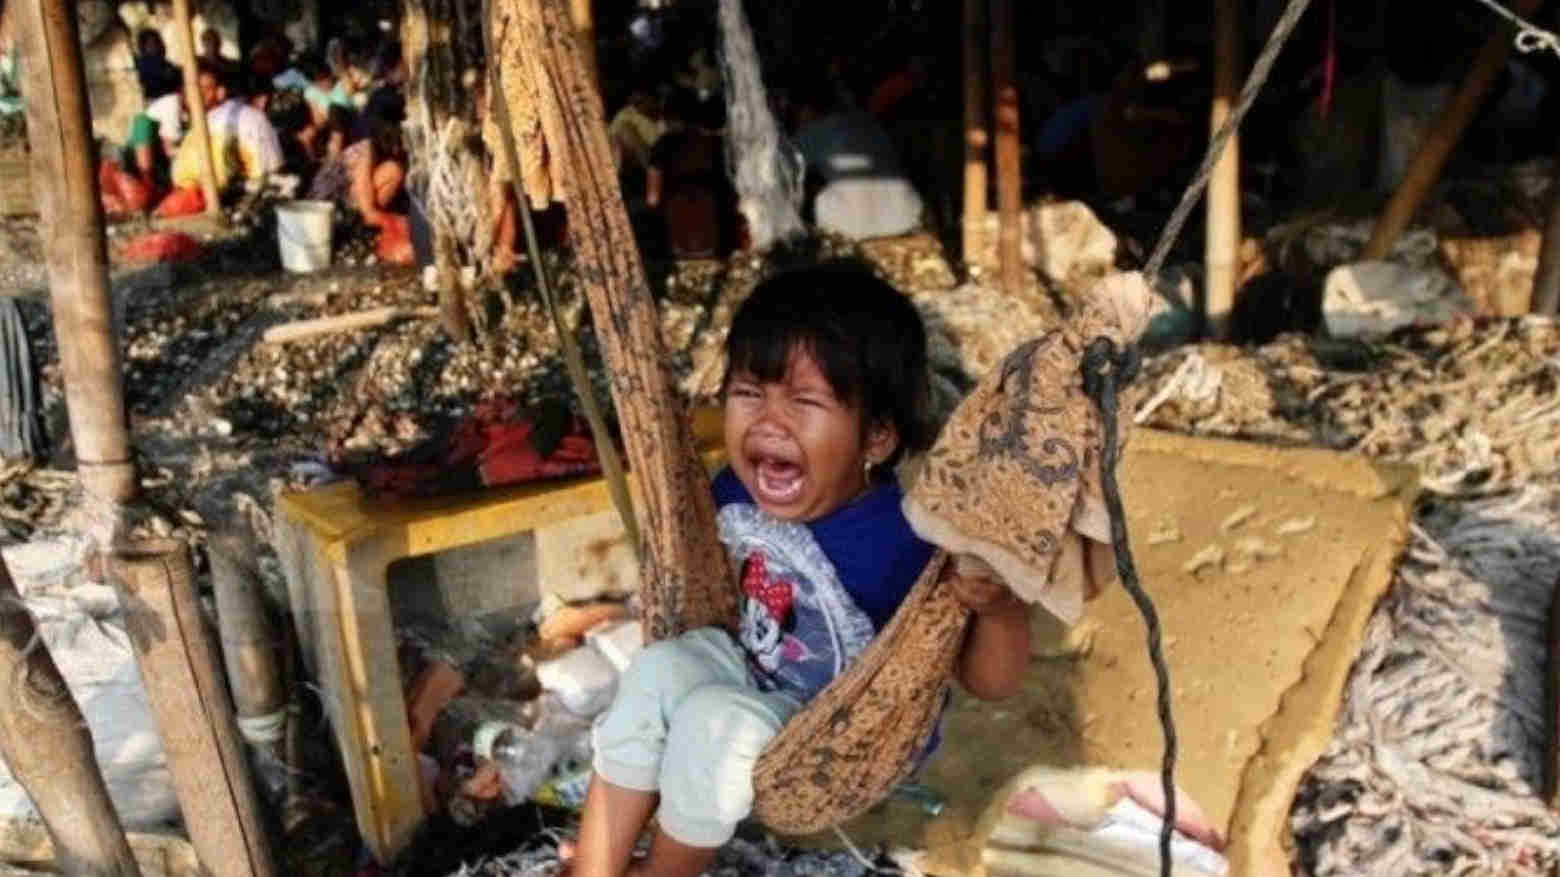 Nasib Orang Indonesia, Kantong Kering dan Kemiskinan Makin Ekstrem